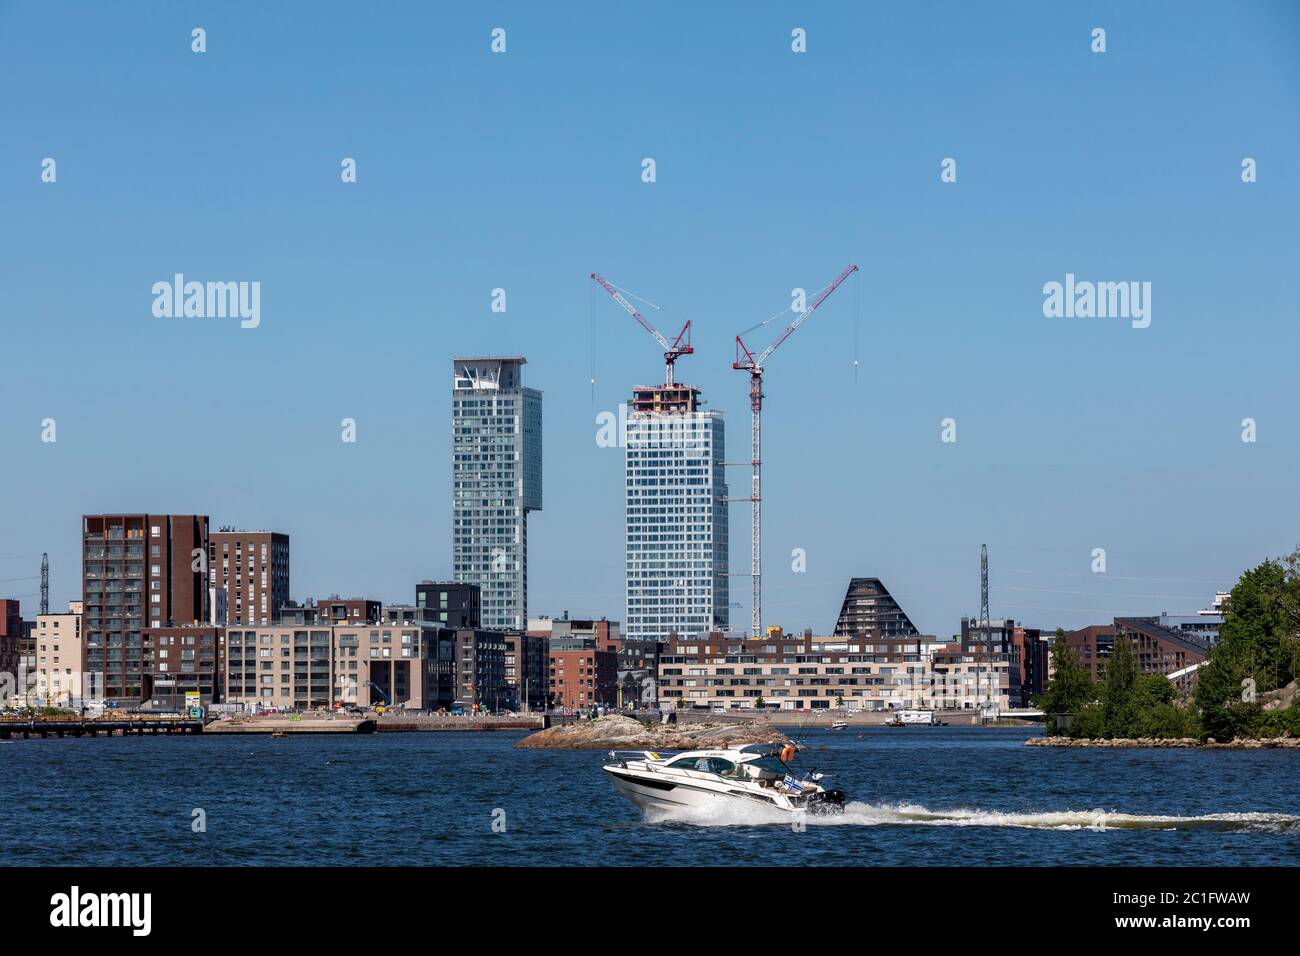 Die Stadt Helsinki ist von Osten, Süden und Westen vom Meer umgeben. Neues Wohnviertel, Kalasatama, hat höchste Wohngebäude in der Stadt. Stockfoto